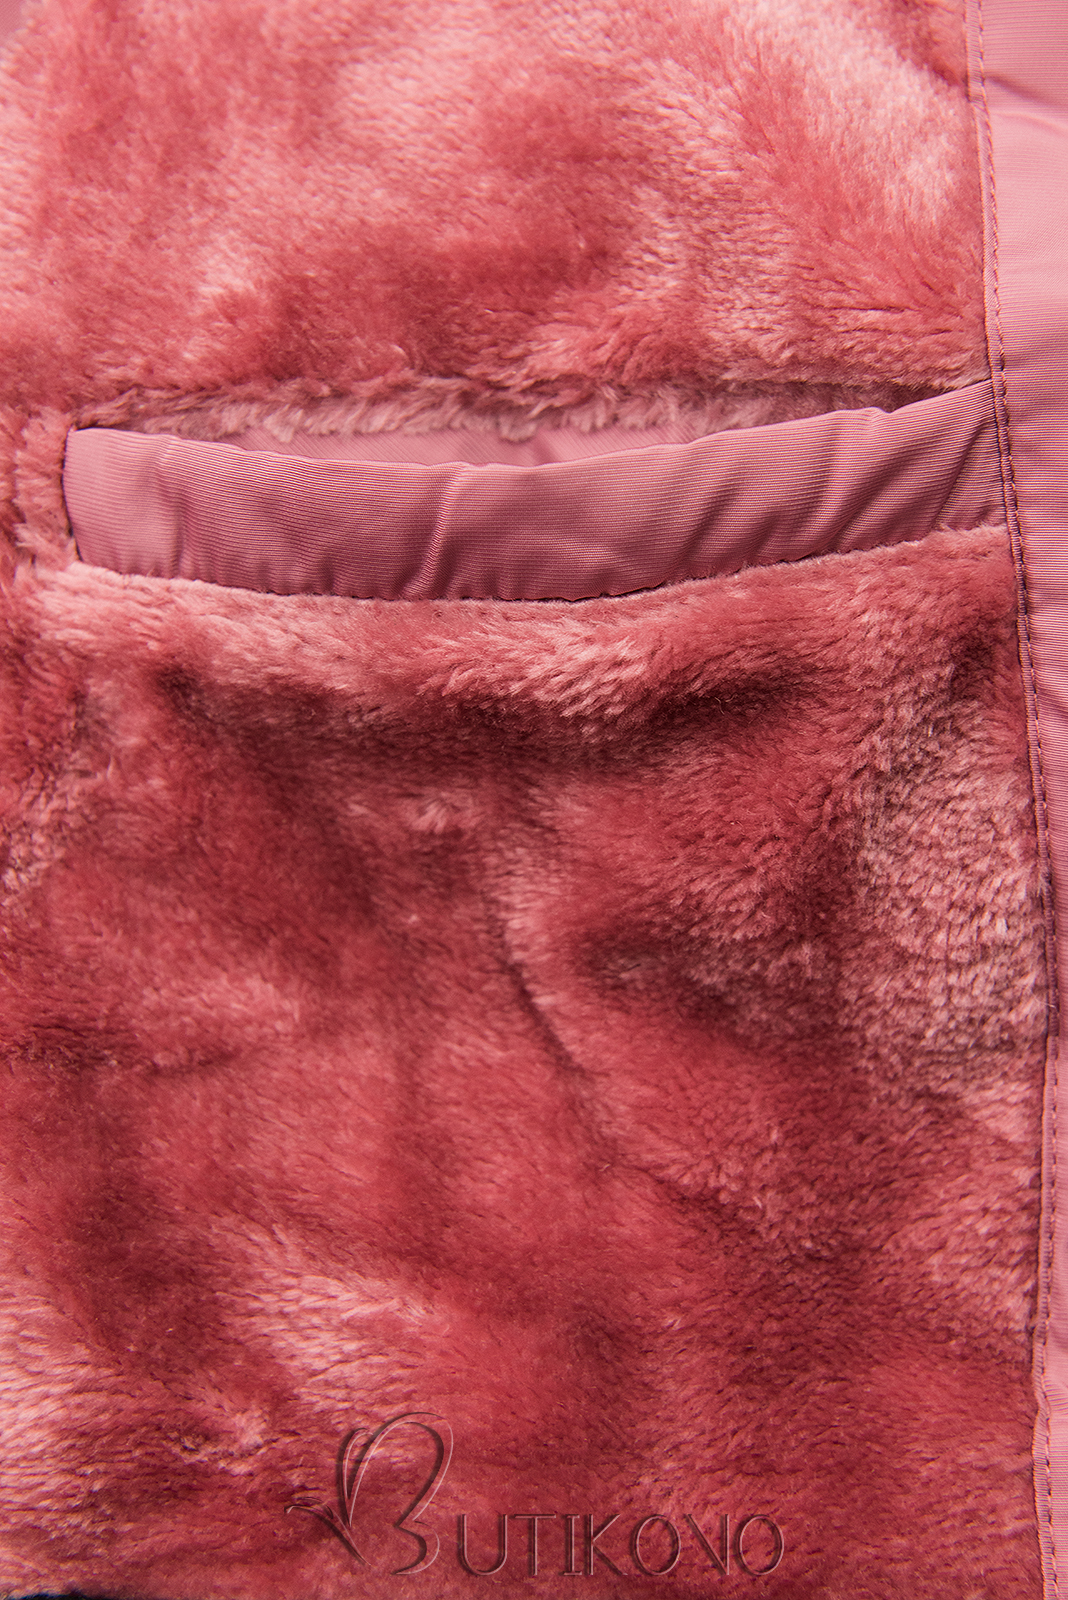 Ružová zimná bunda s odnímateľnou kapucňou